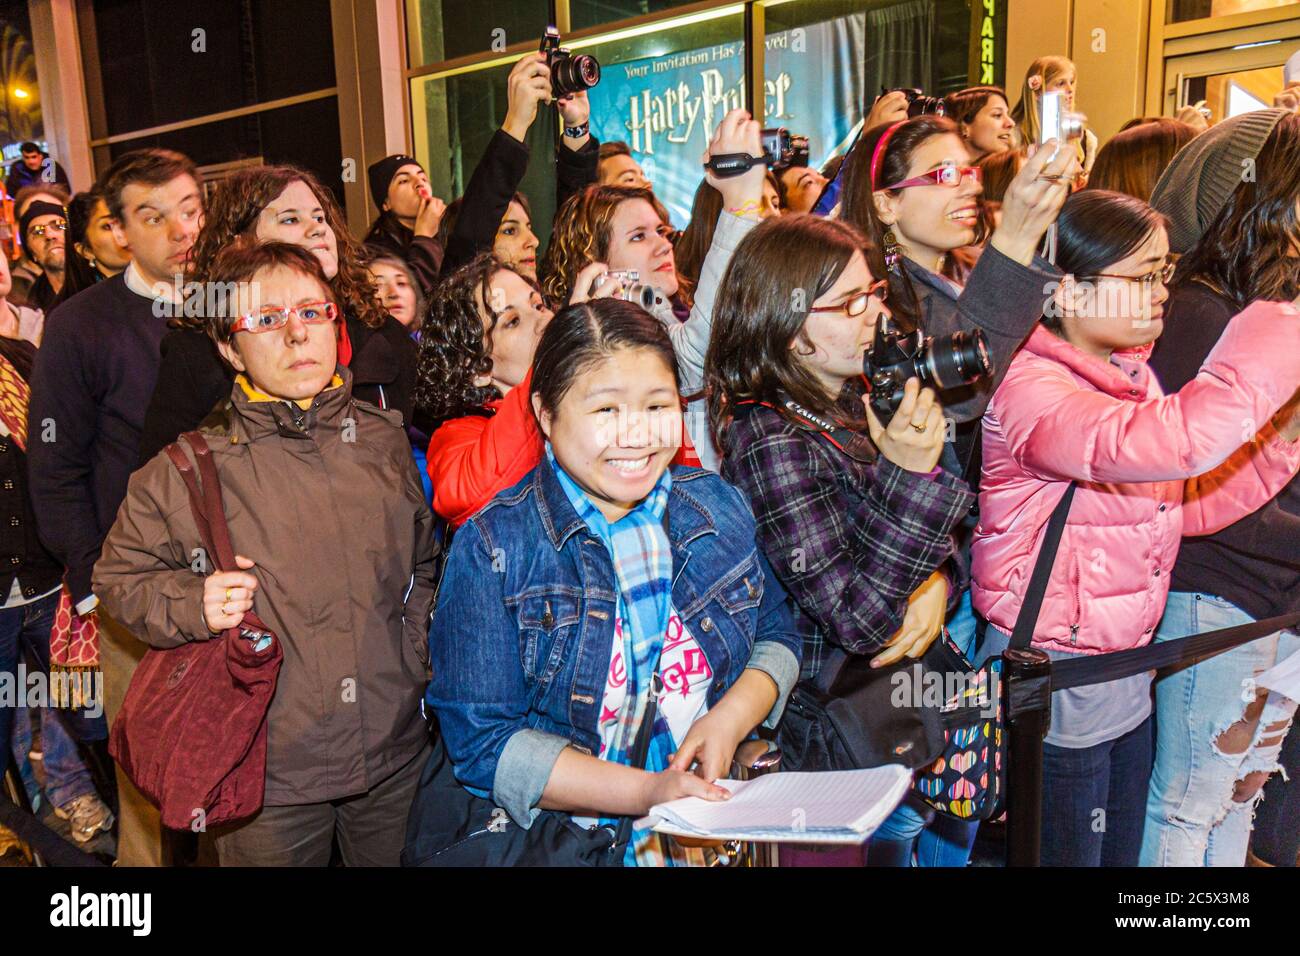 Nueva York,Nueva York,NYC,Midtown,Manhattan,44th Street,exhibición de Harry Potter,alfombra roja,evento,gran apertura,fans,immig étnico asiático asiático Foto de stock